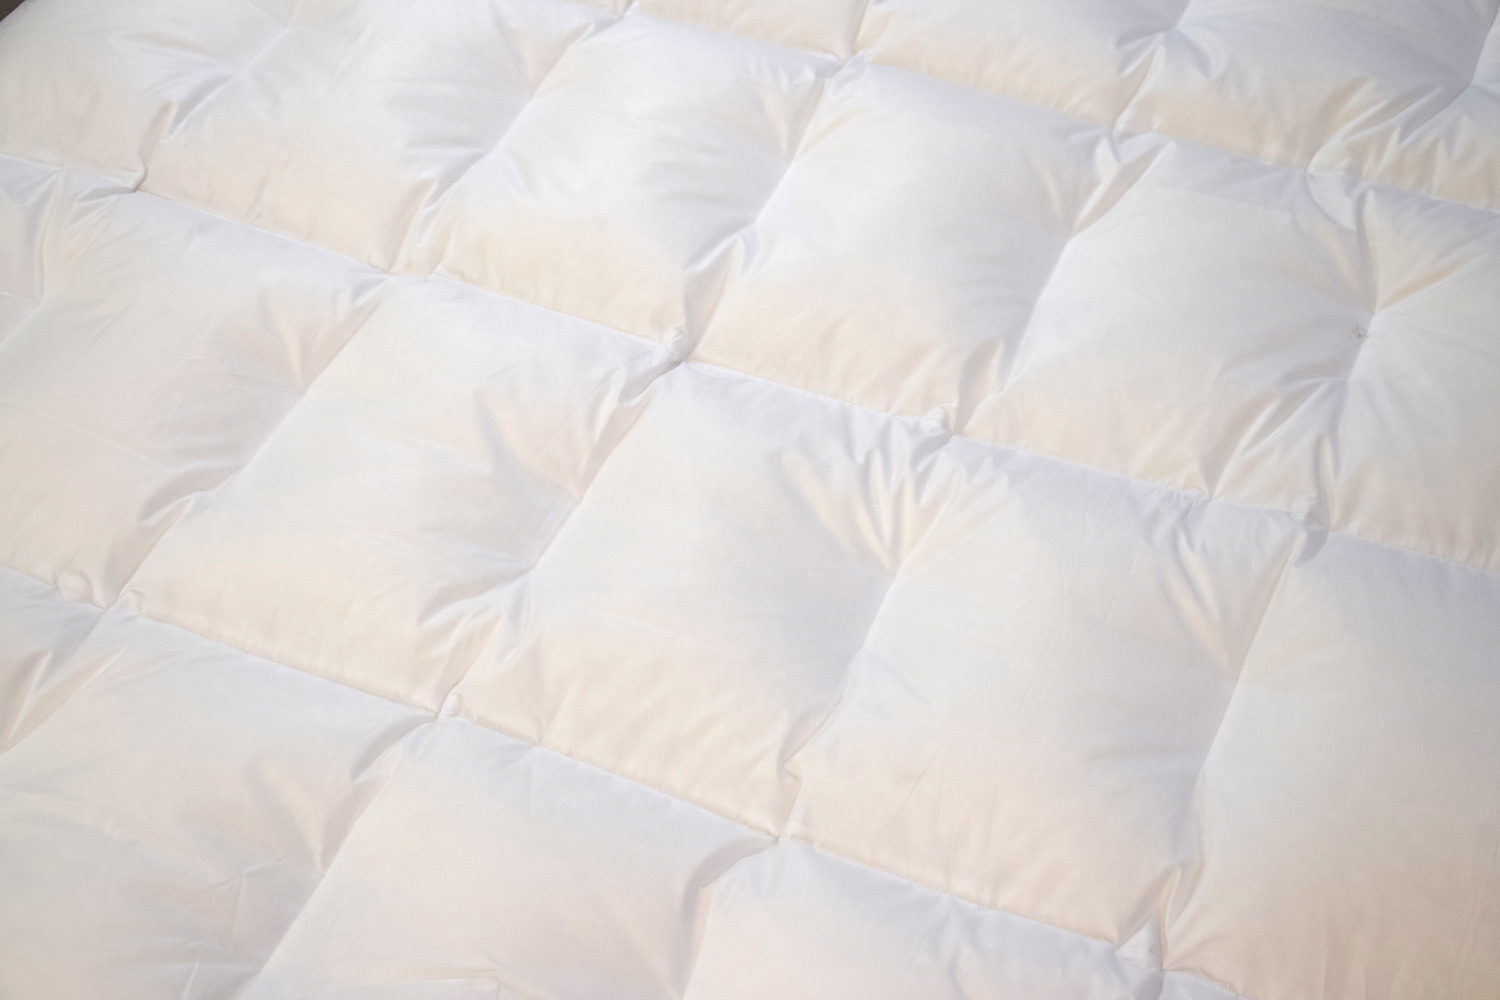 LIMA Daunendecke - EDELWEIß - Sommer Bettdecke mit feiner Batist-Hülle aus 100% Baumwolle